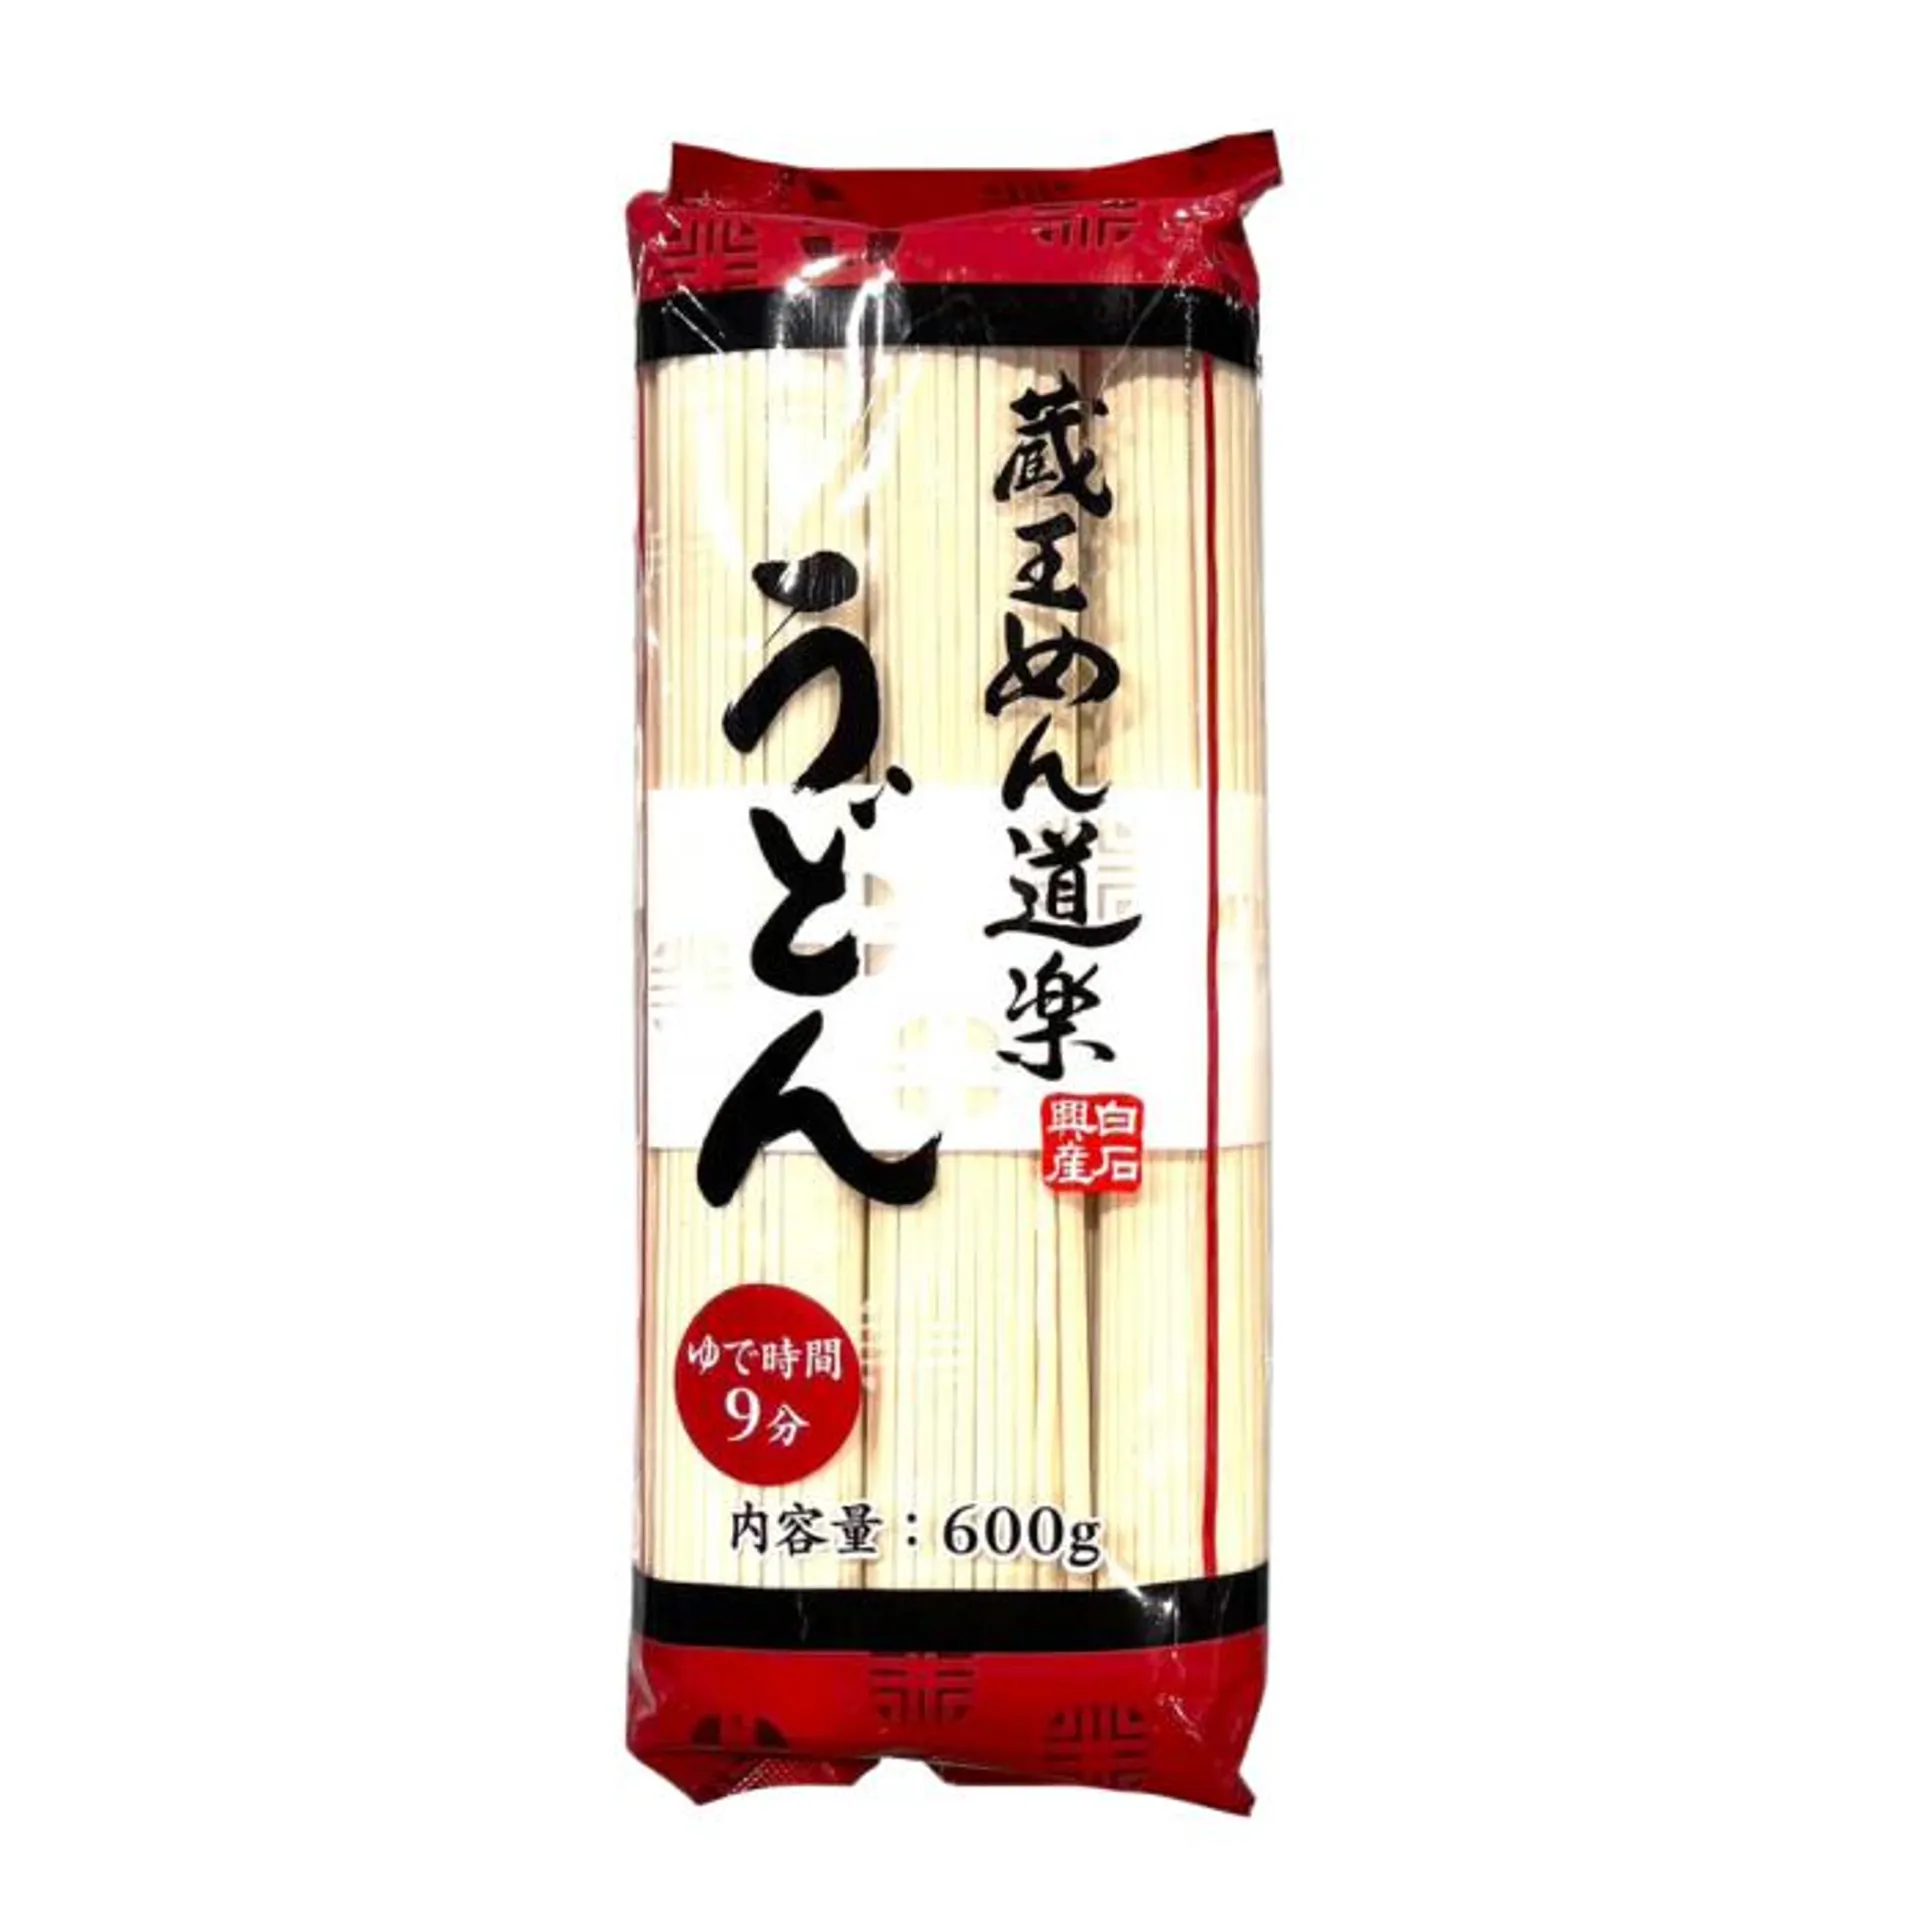 SHIRAISHI / DRIED NOODLES (ZAOU MEN DOURAKU UDON NOODLE) 100gx6